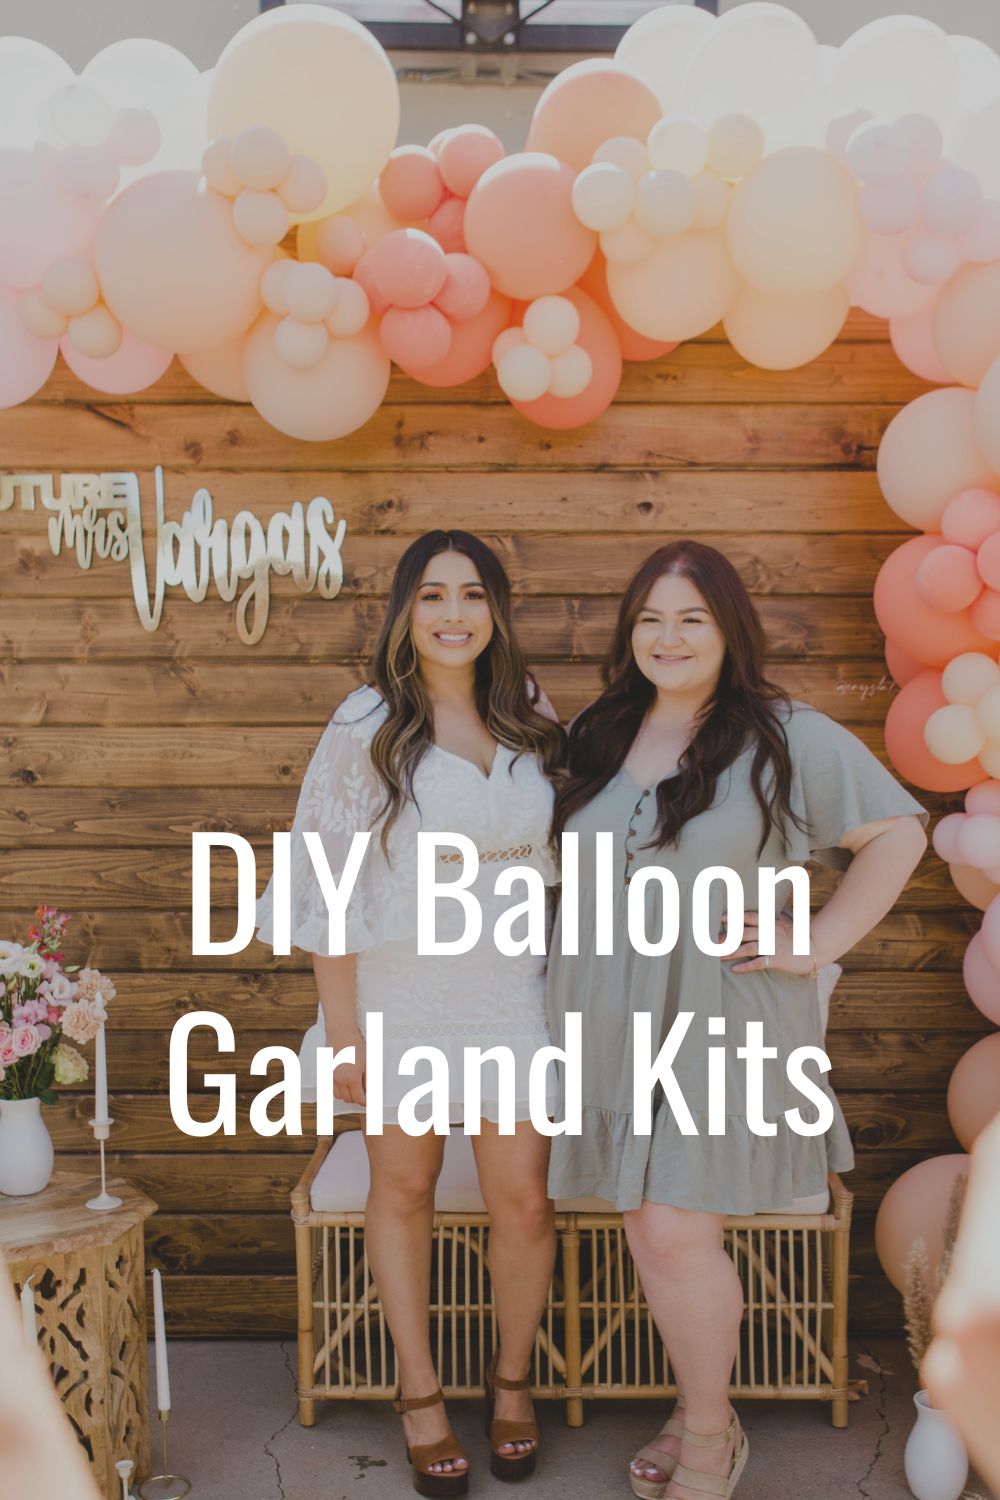 DIY wedding balloon garland kits